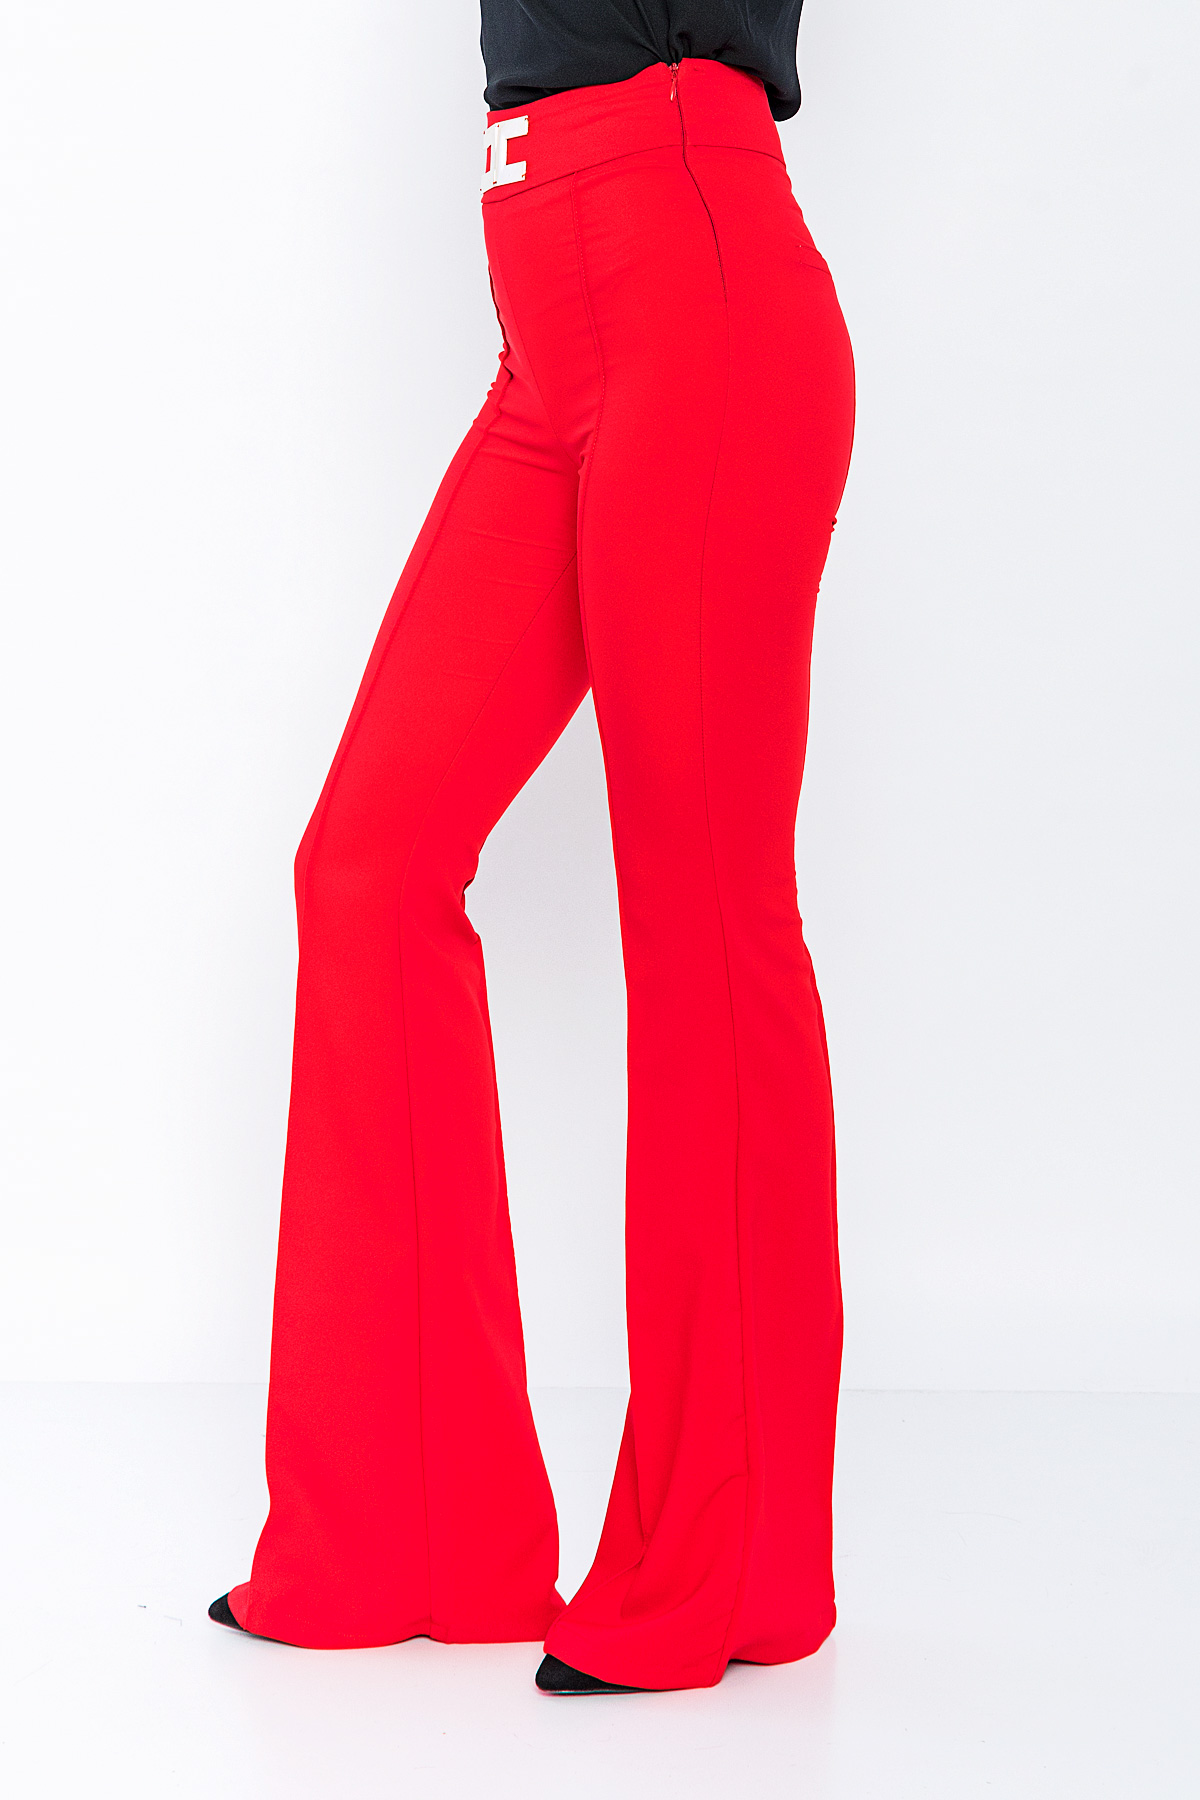 Kadın Kırmızı Yüksek Bel Tokalı İspanyol Paça Pantolon resmi